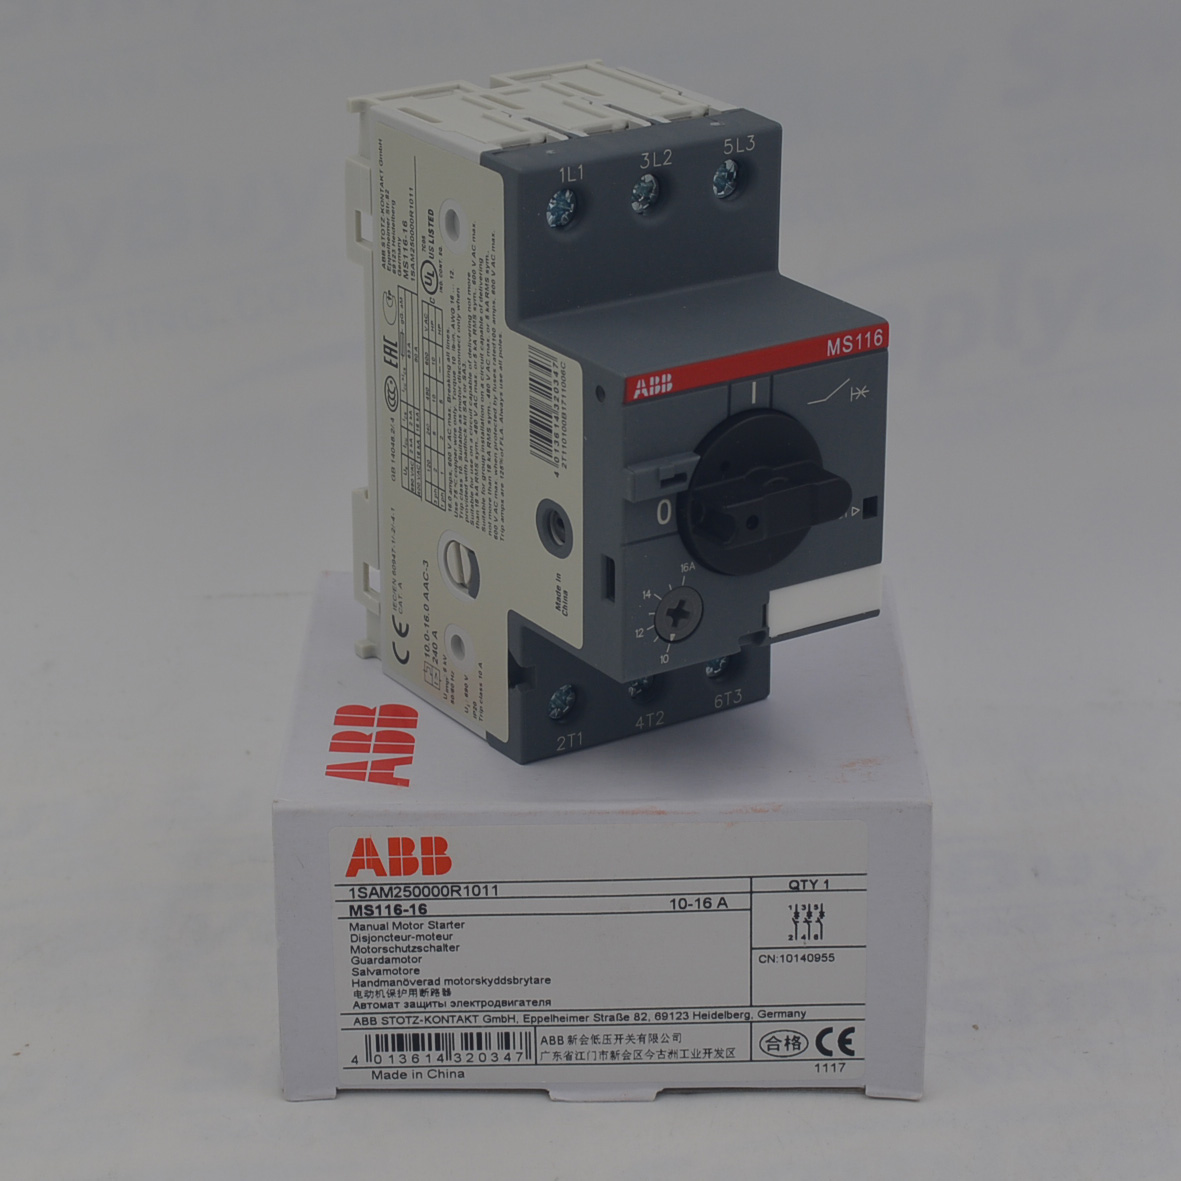 ABB MS116-16 Manual Motor Starter 1SAM250000R1011 